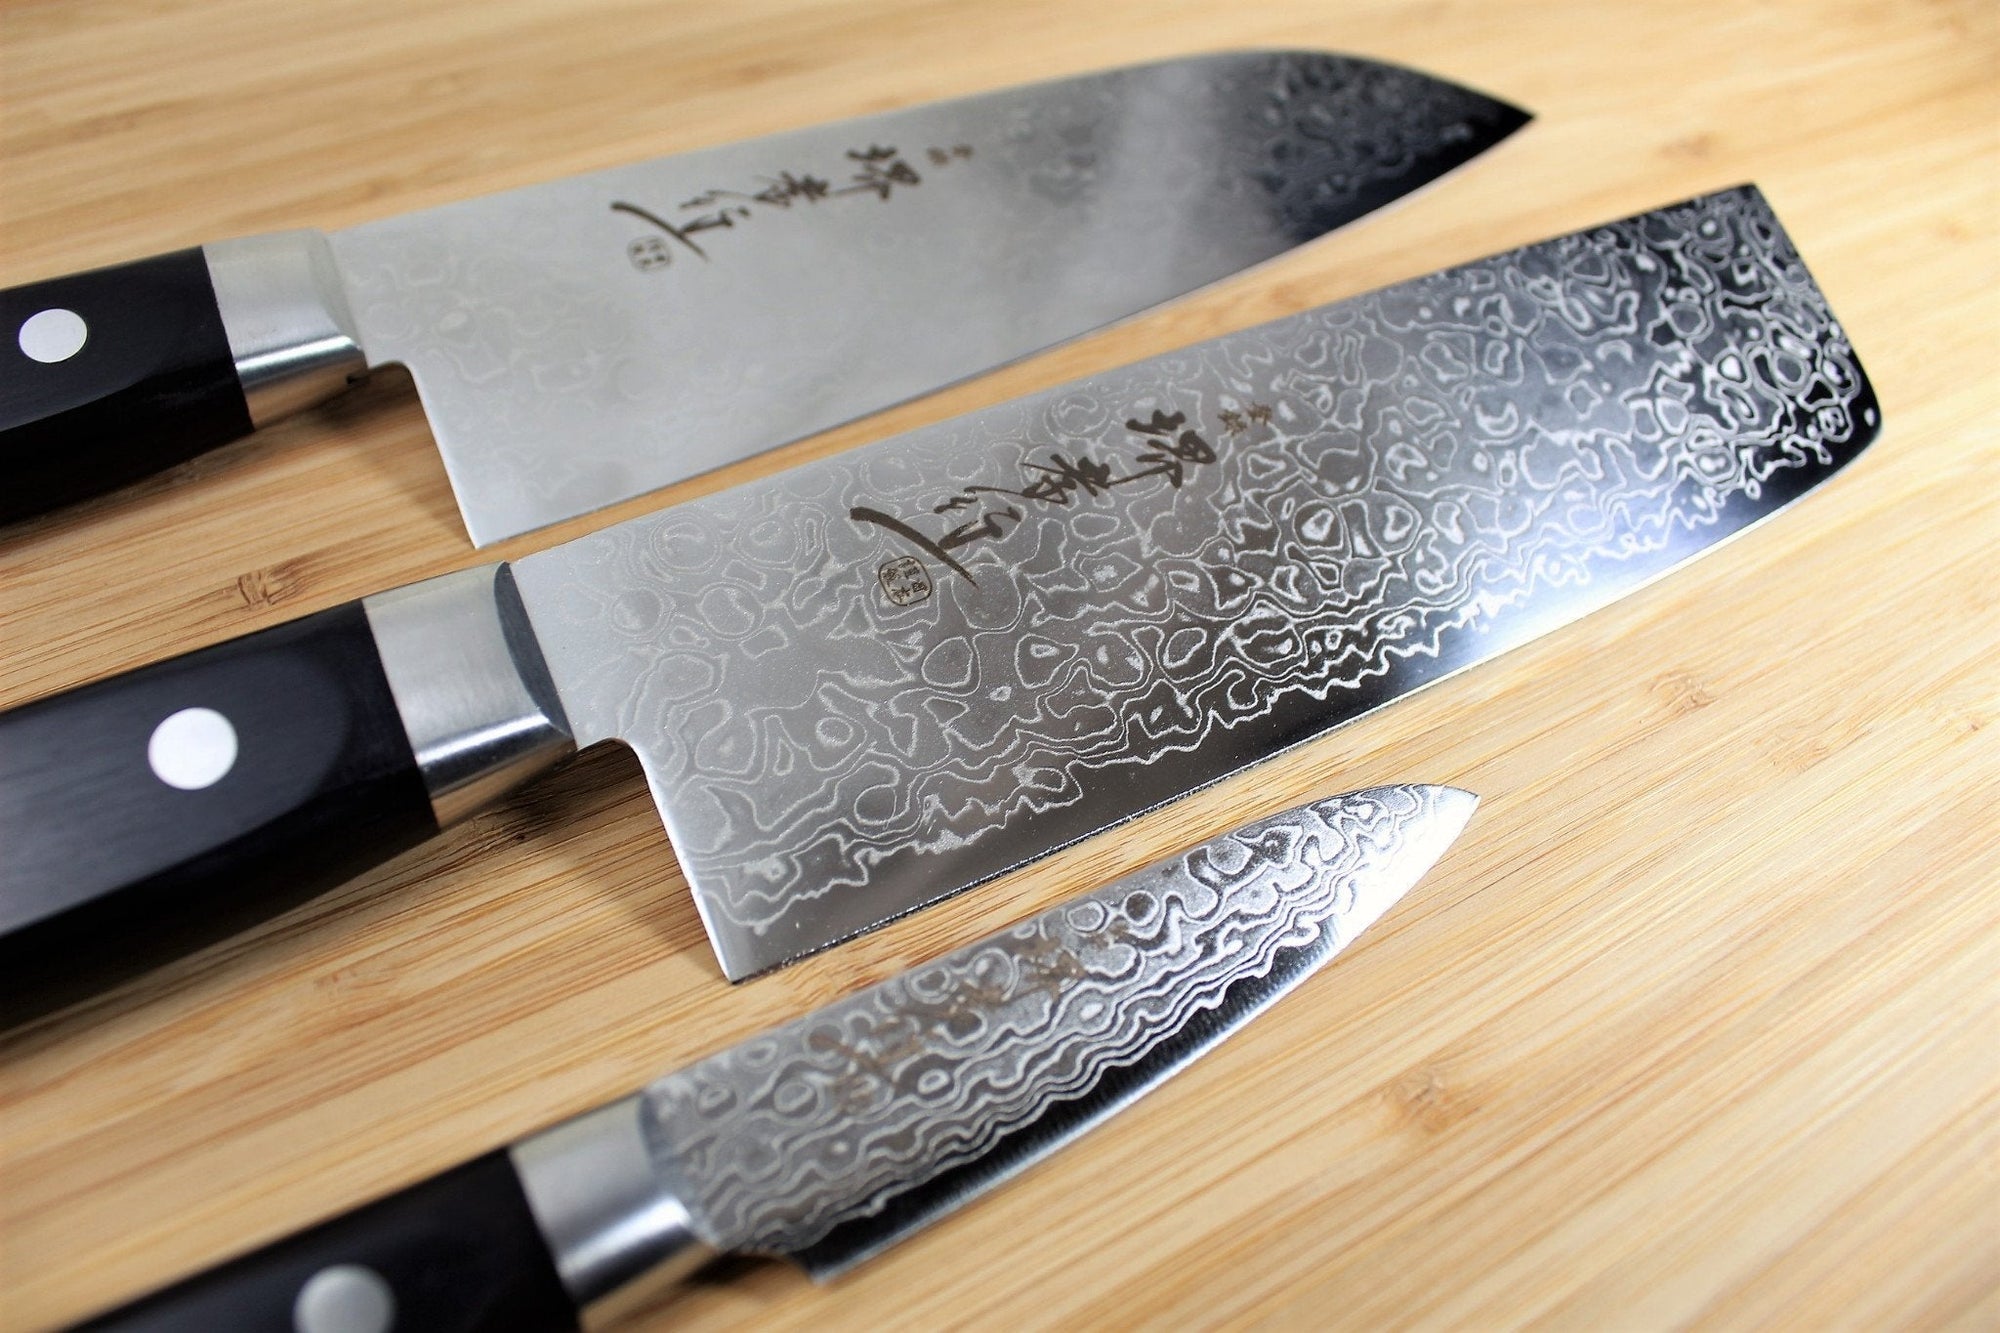 Hageshi AUS10 Japanese Knife Set